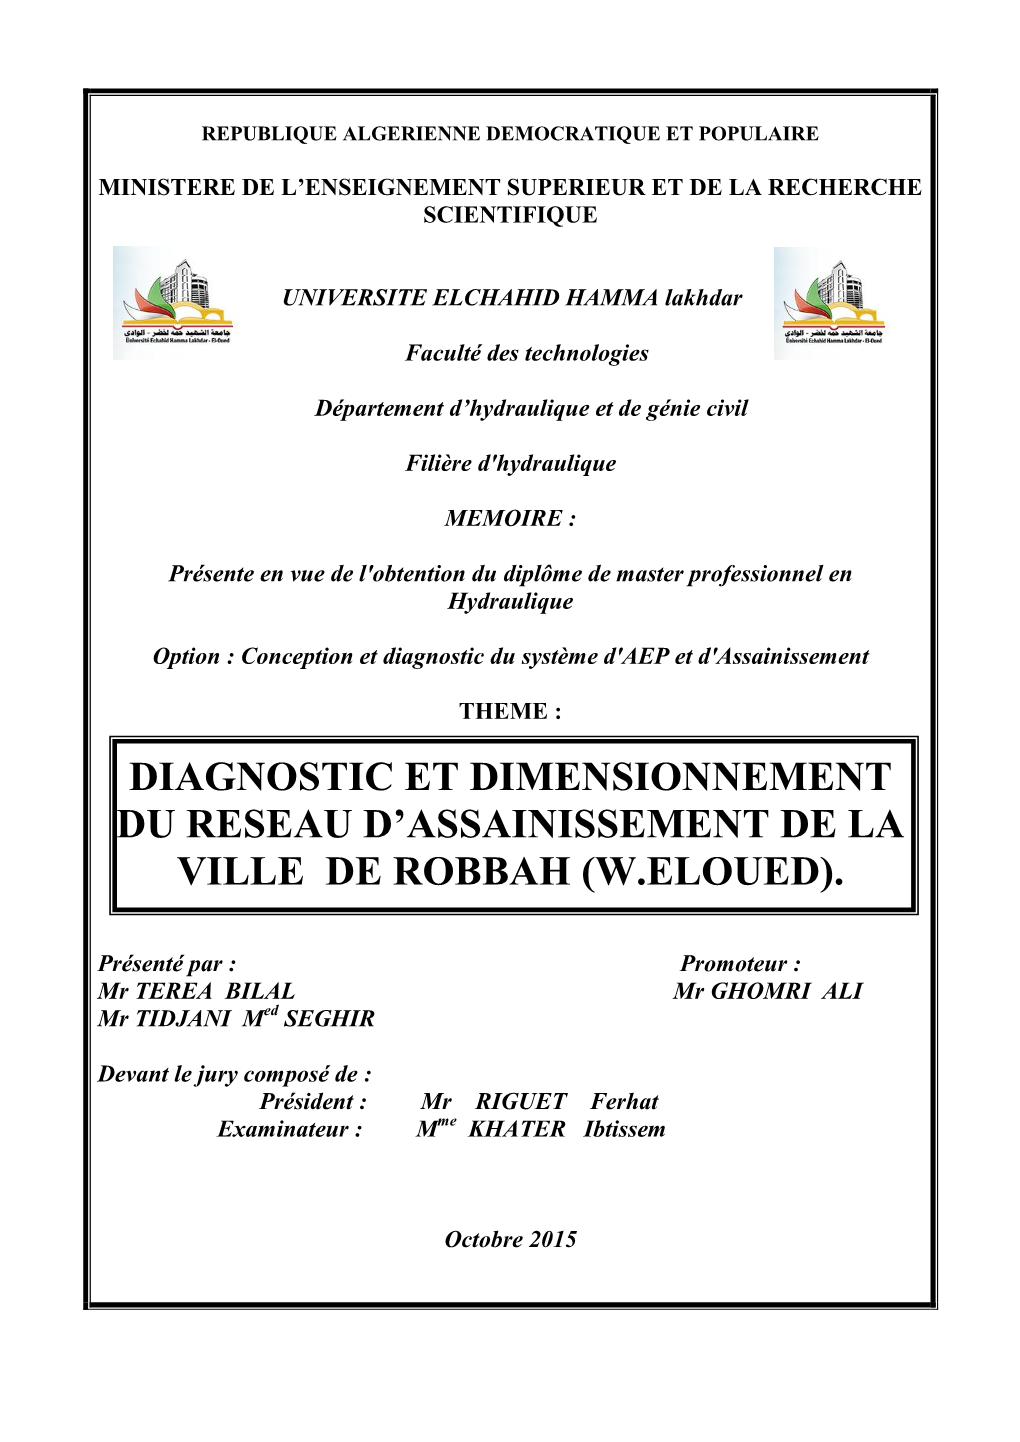 Diagnostic Et Dimensionnement Du Reseau D’Assainissement De La Ville De Robbah (W.Eloued)